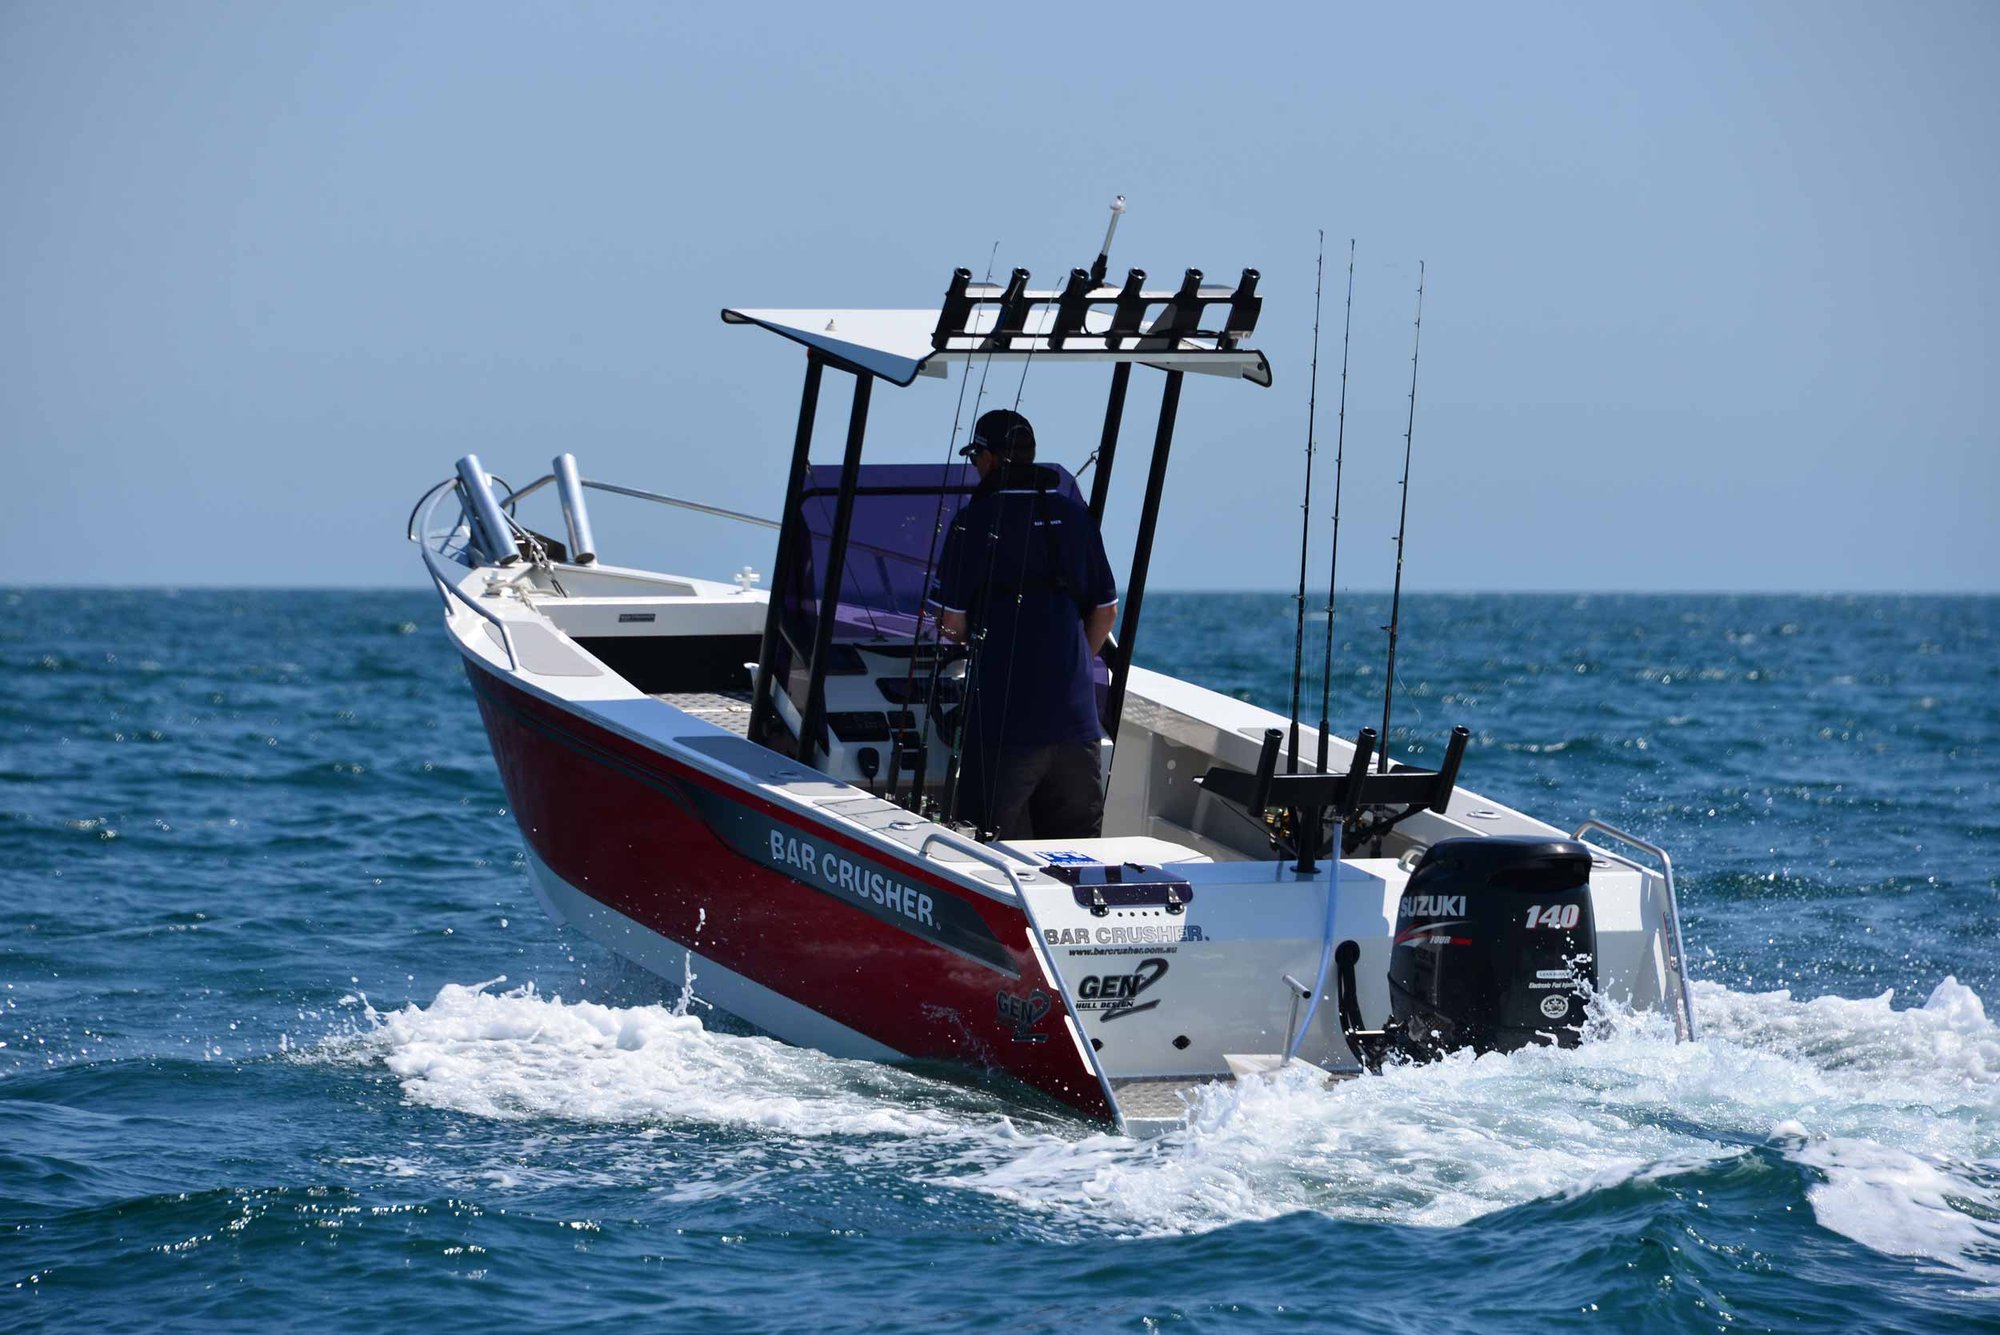 models-bar-crusher-615wr-6-plate-aluminium-fishing-boat-1